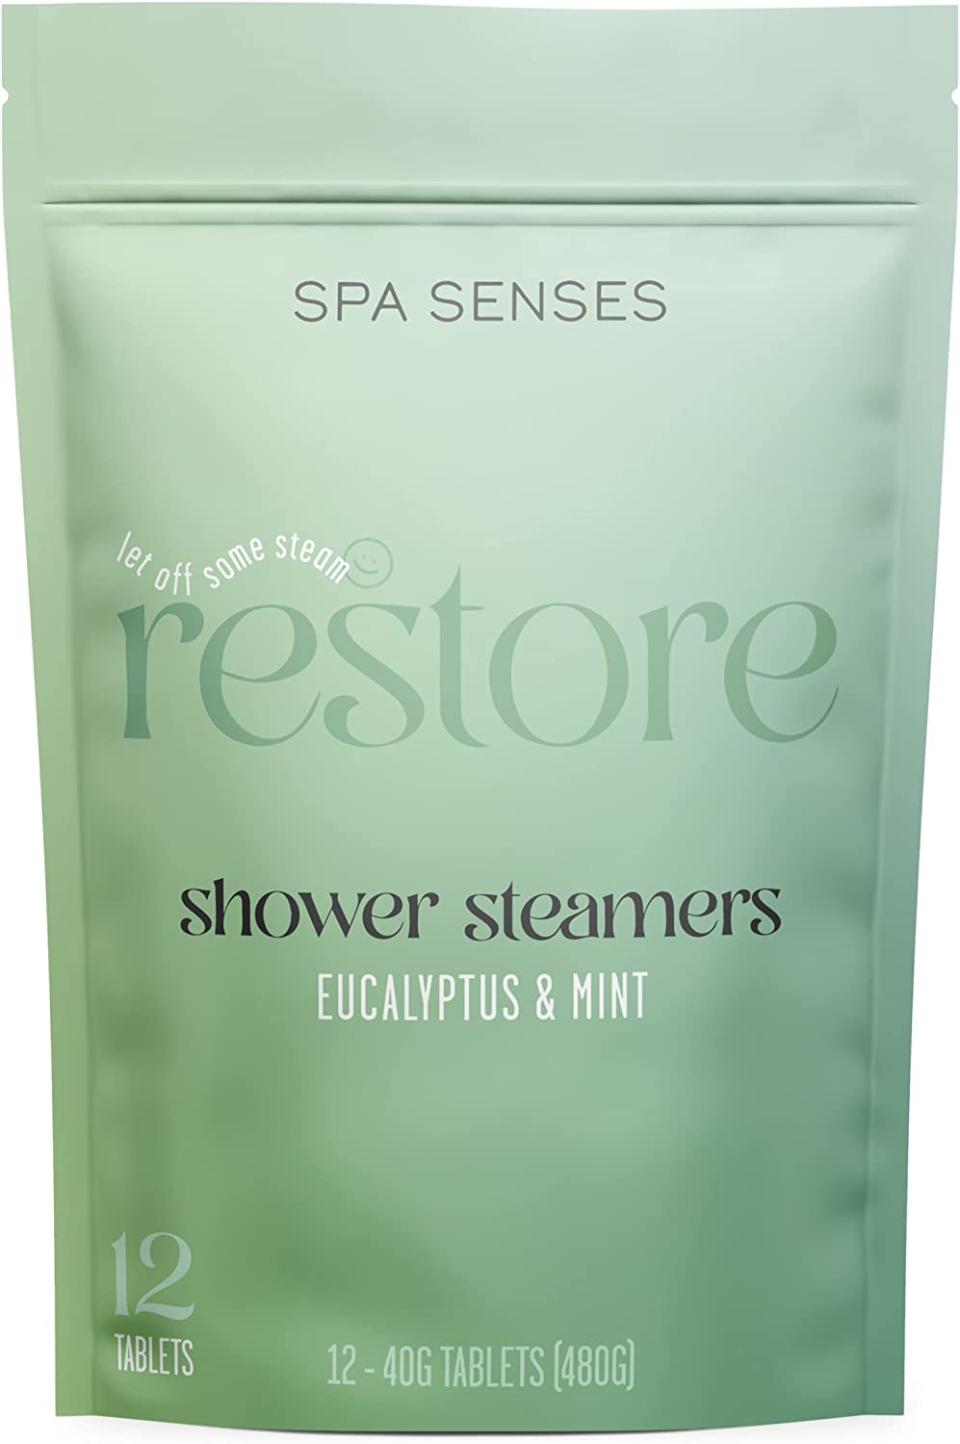 SpaSenses - Eucalyptus & Mint Essential Oil Shower Steamers